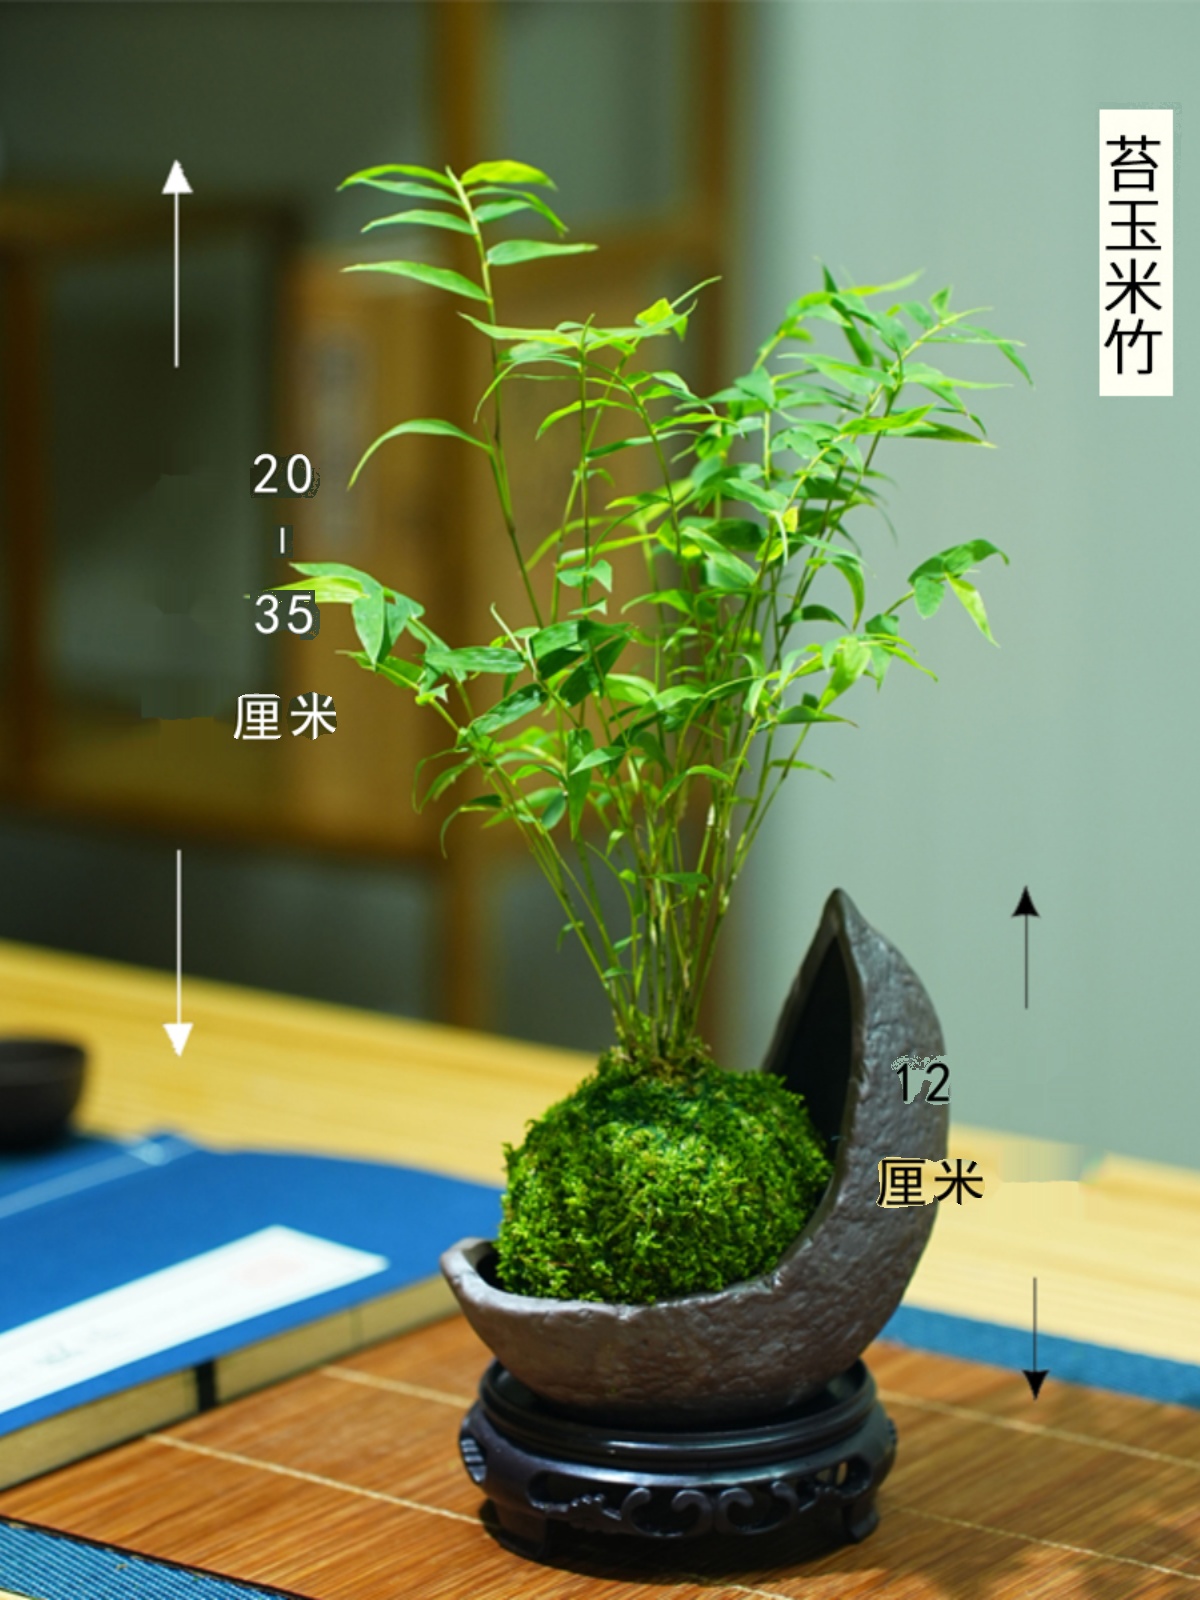 米竹盆栽室内小型凤尾竹迷你盆景好养竹子绿植观叶客厅植物阳台 - 图2